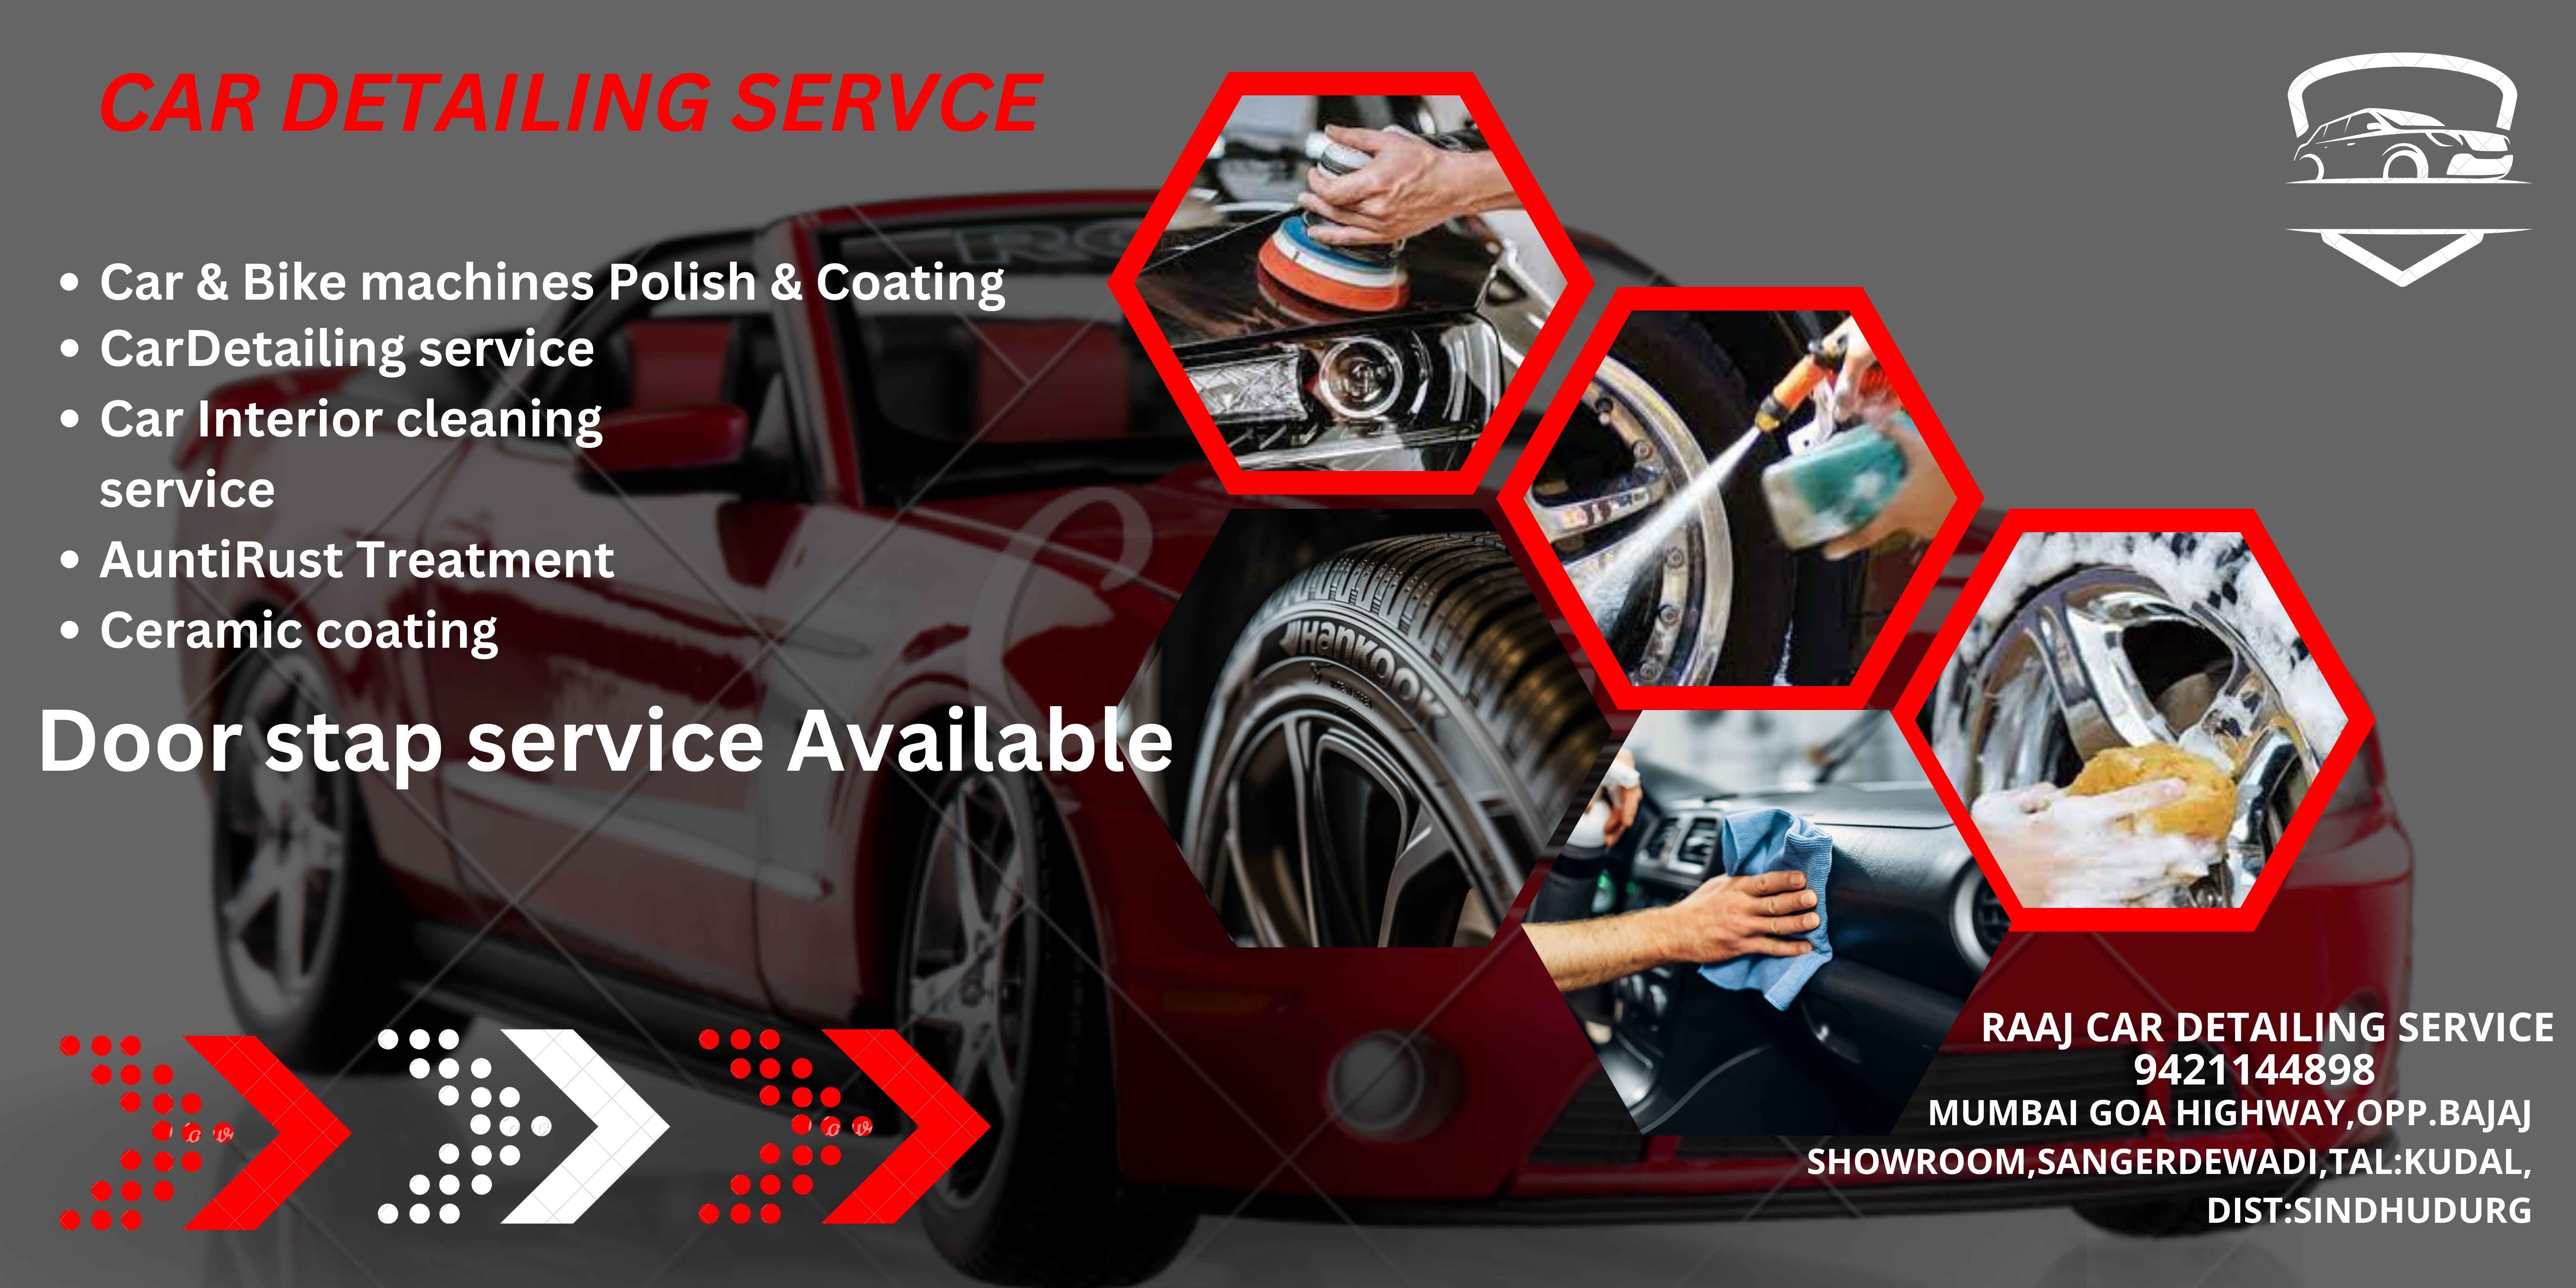 Raaj Car Detailing service